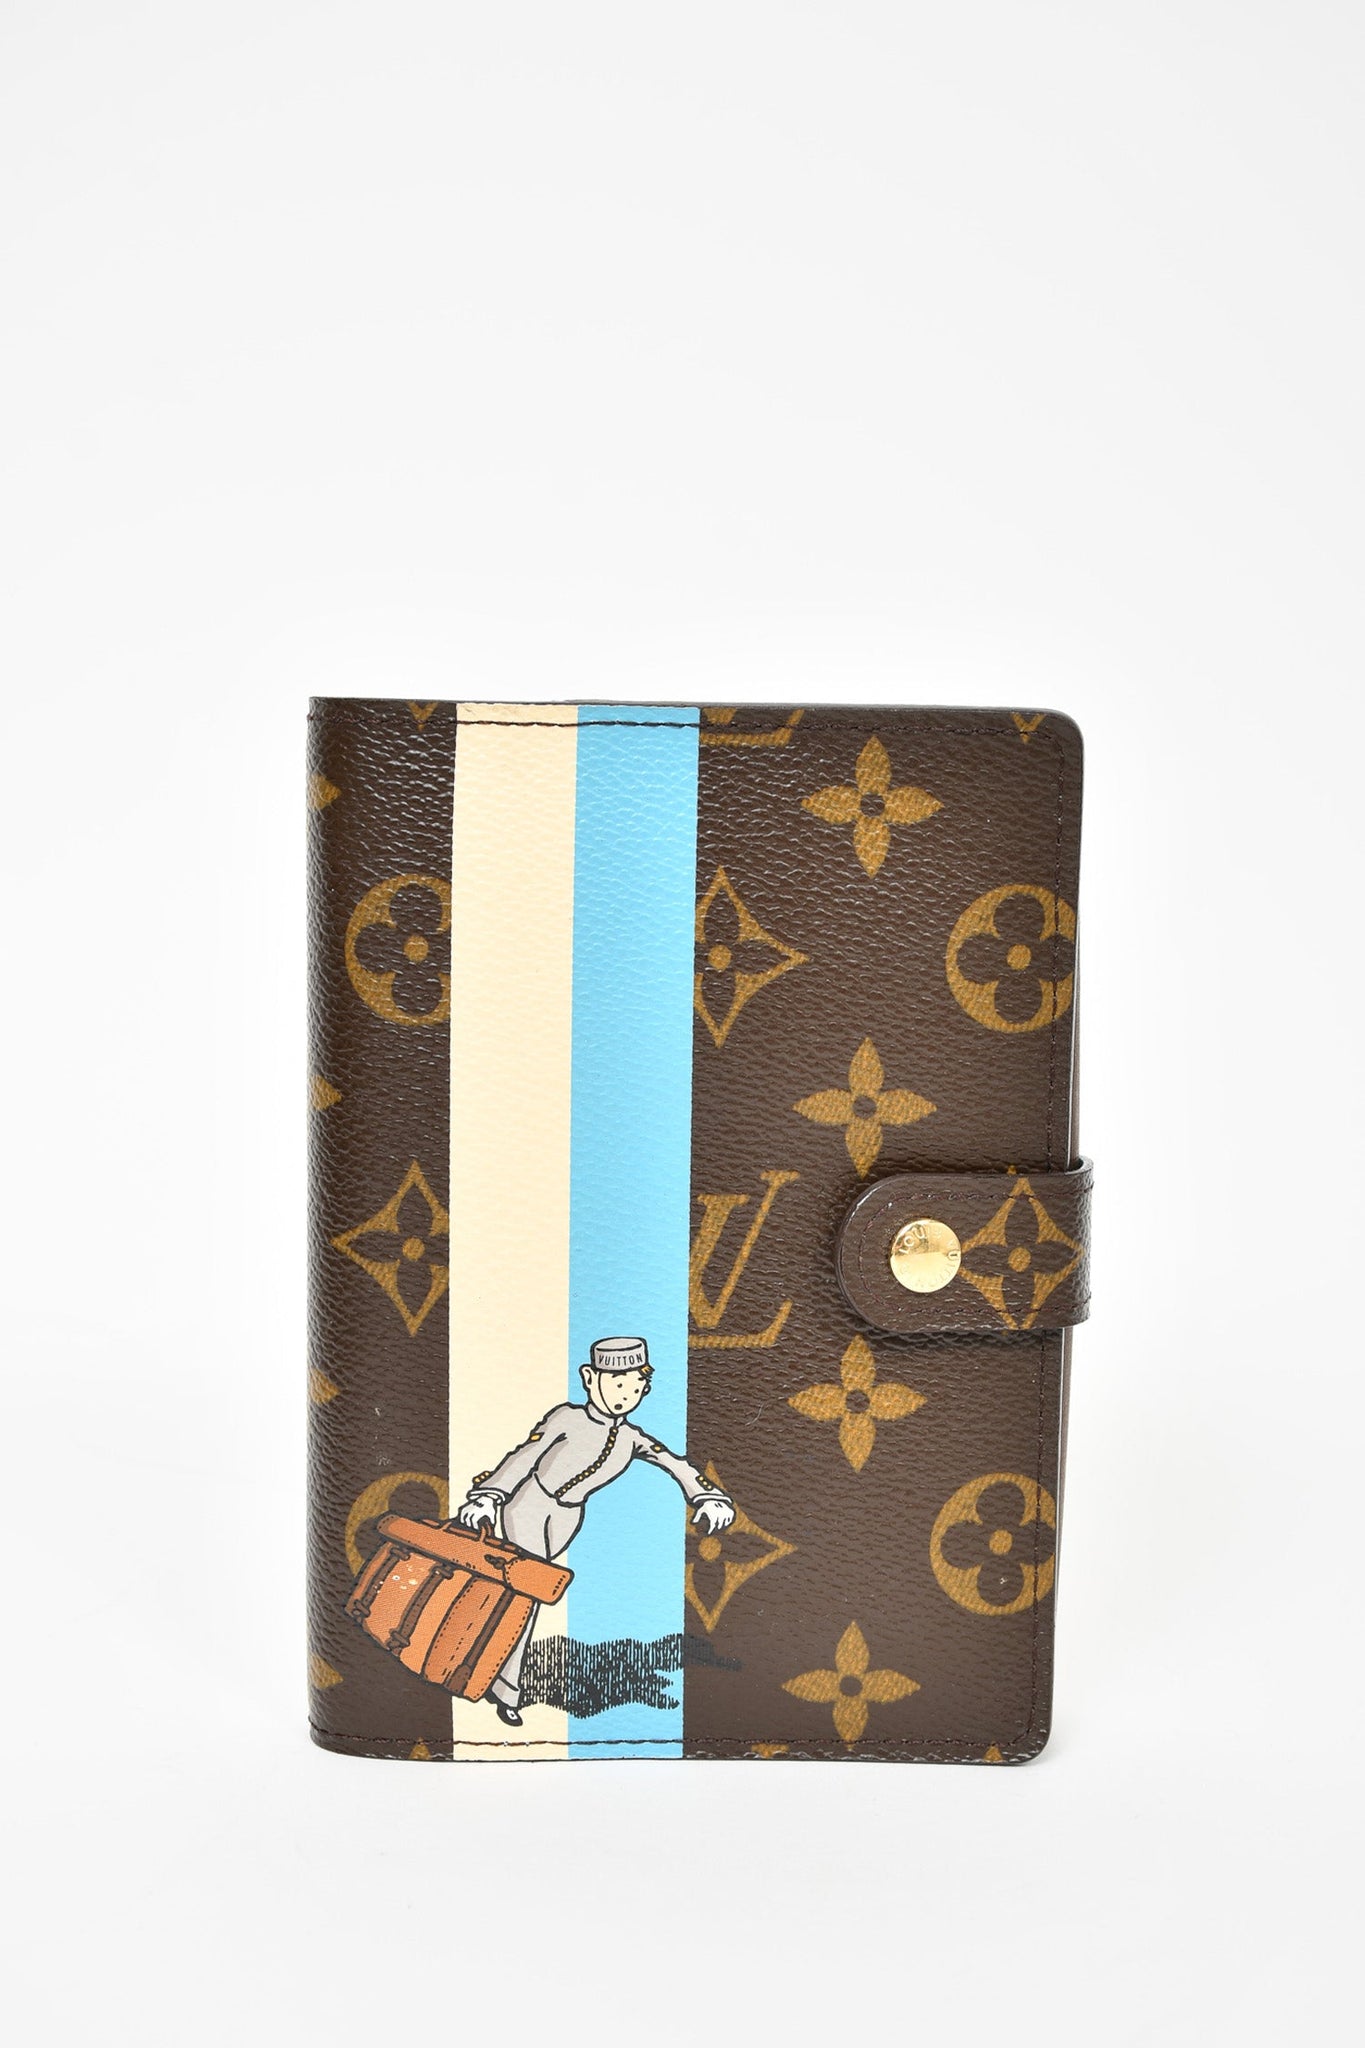 Louis Vuitton Damier Graffiti Wallet & Passport Cover Holder